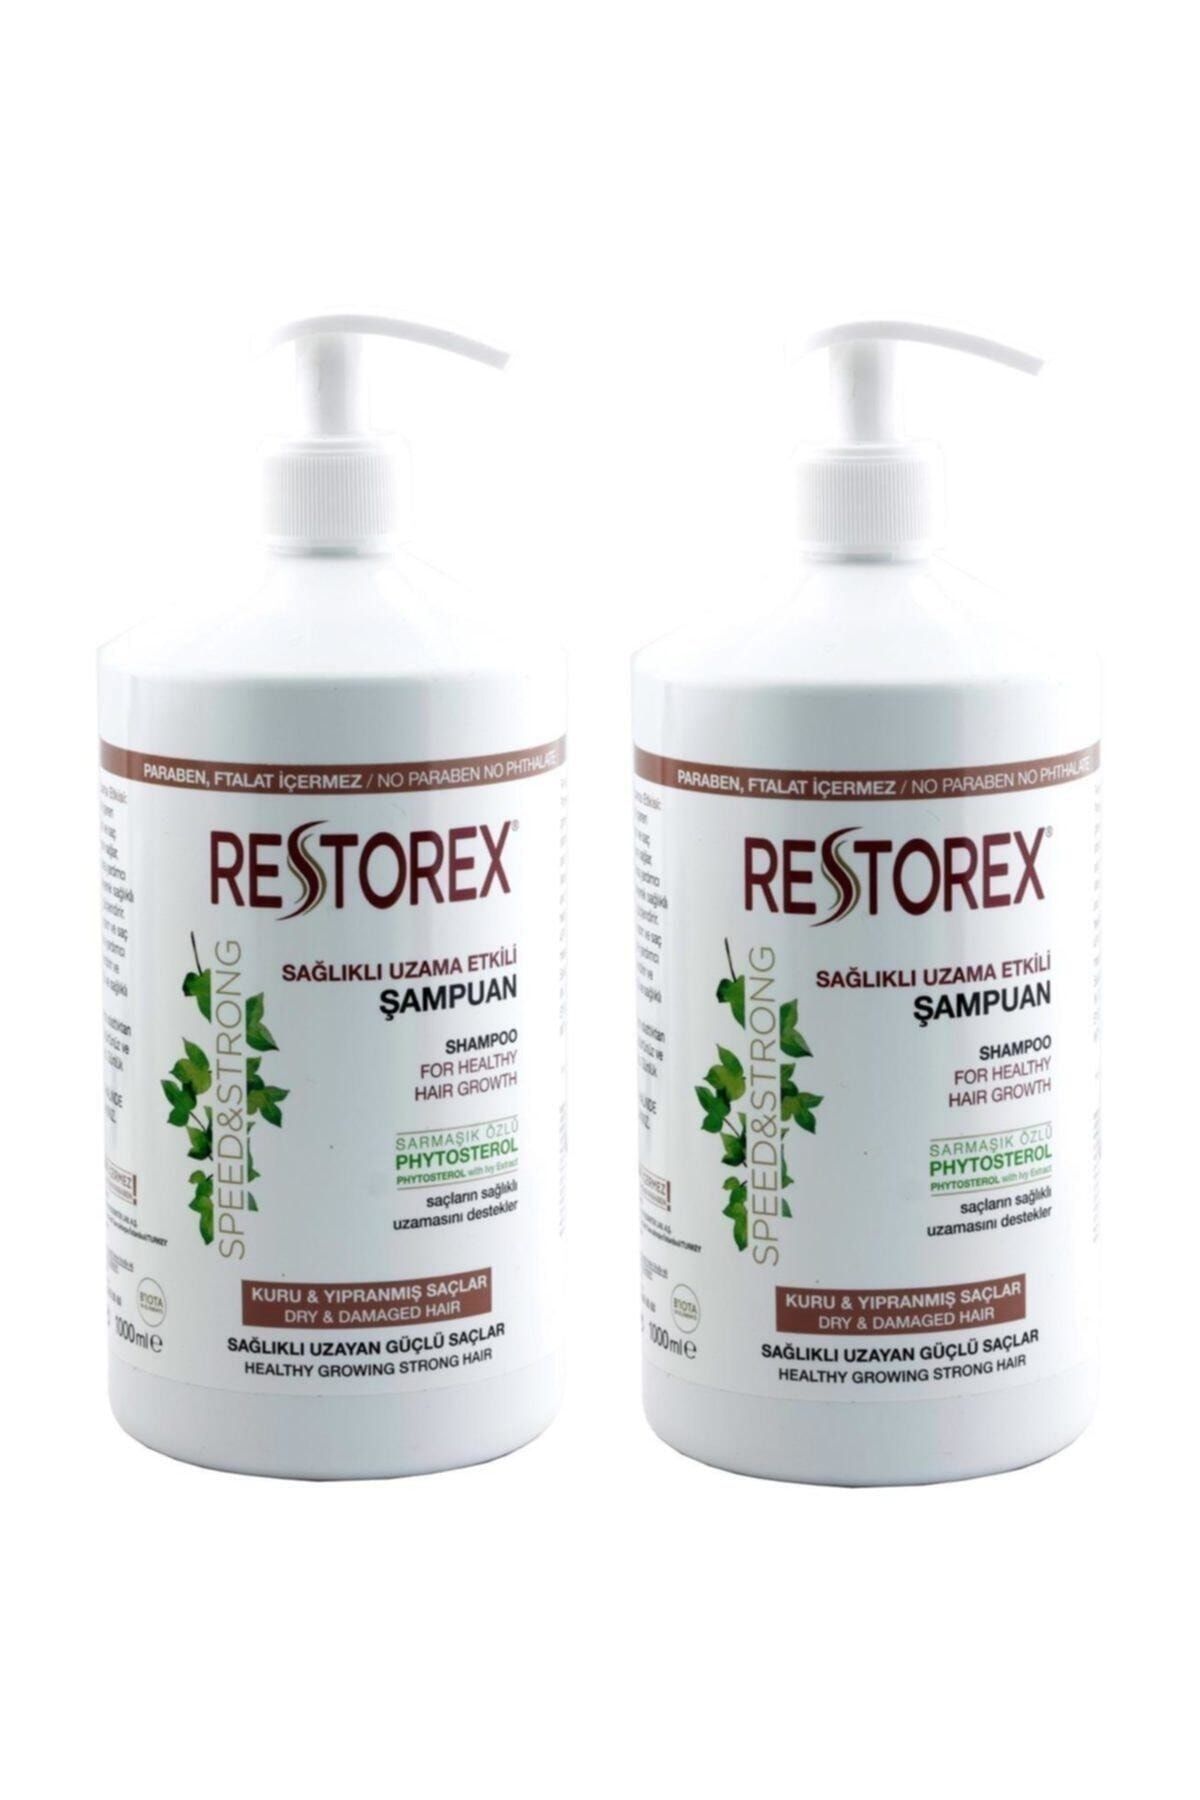 Restorex Şampuan 1000 ml Kuru Yıpranmış Saçlar Için X 2 Adet